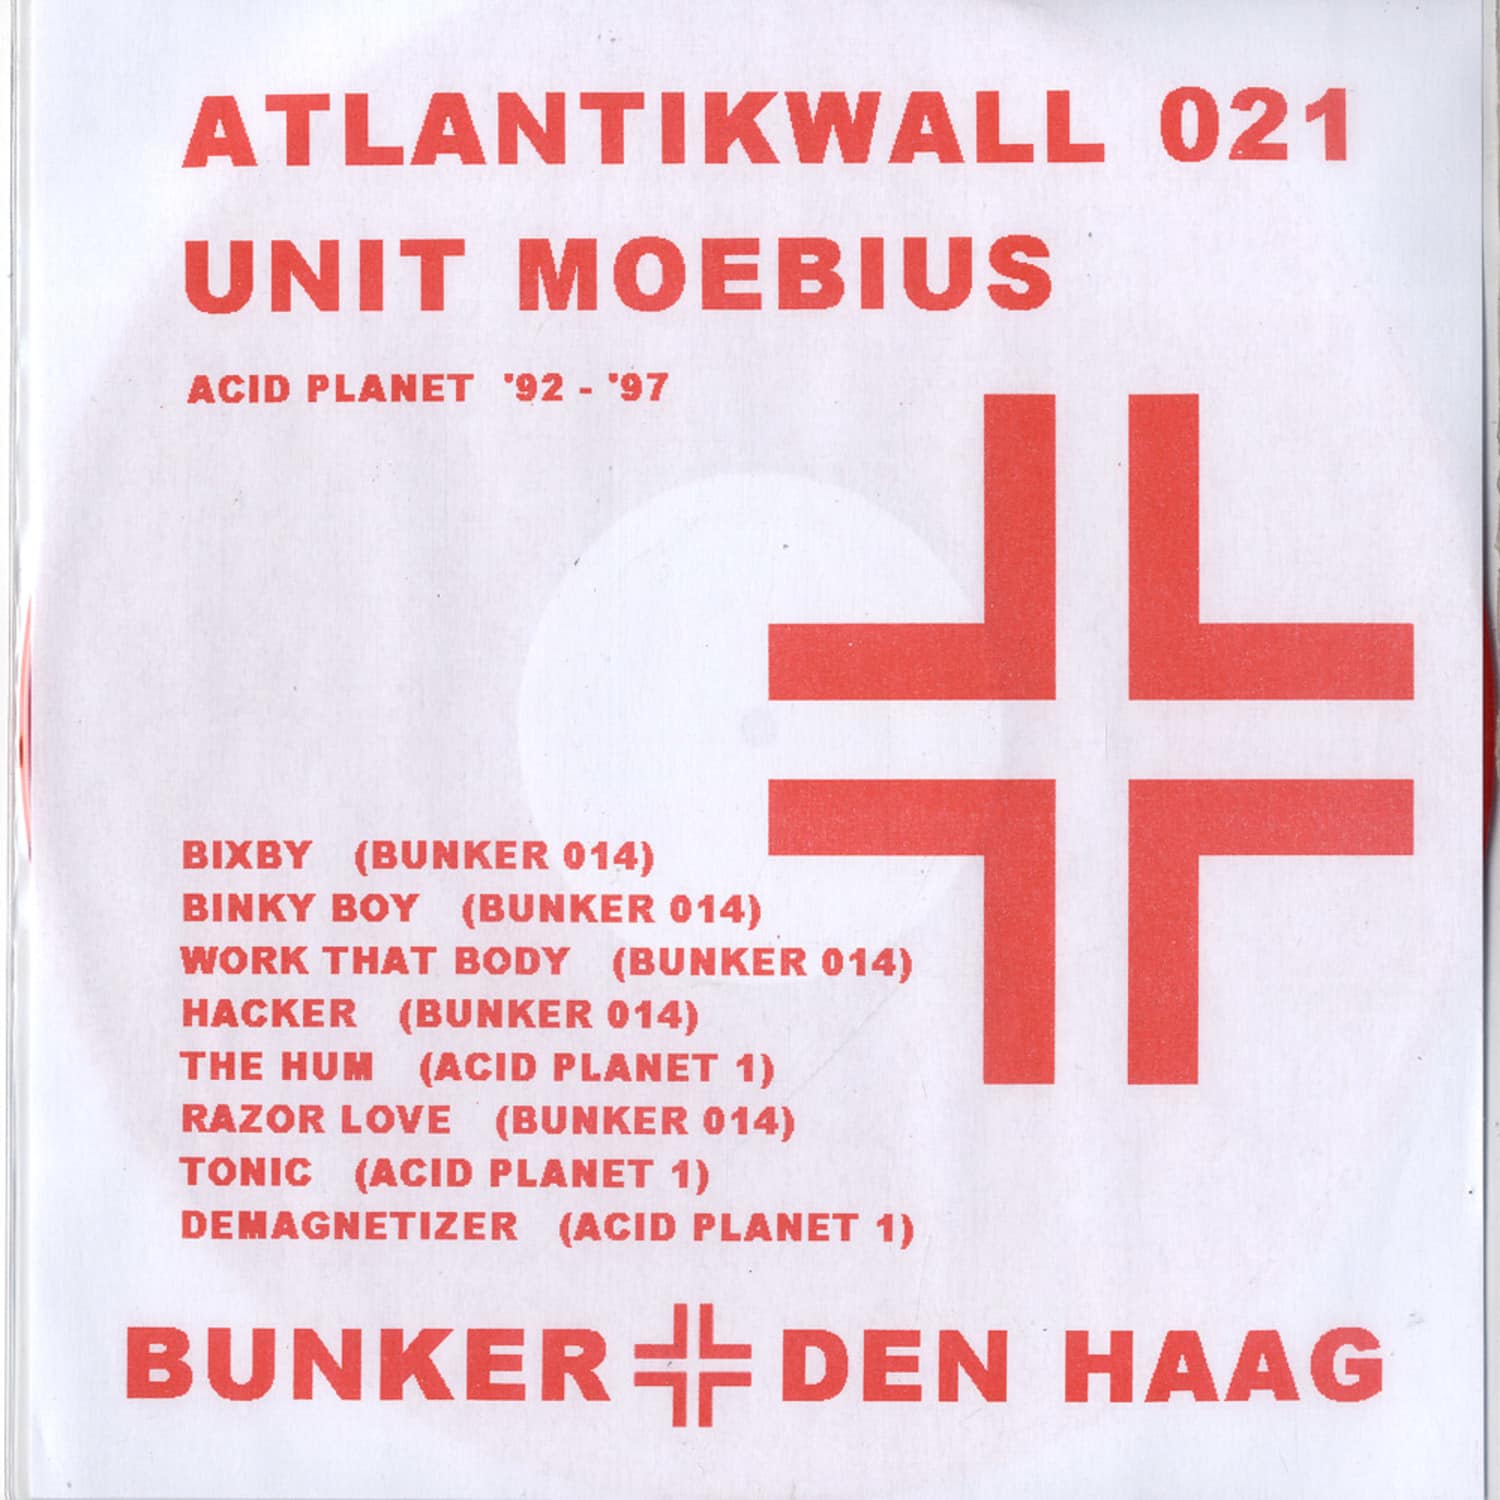 Unit Moebius - UNIT MOEBIUS PT3